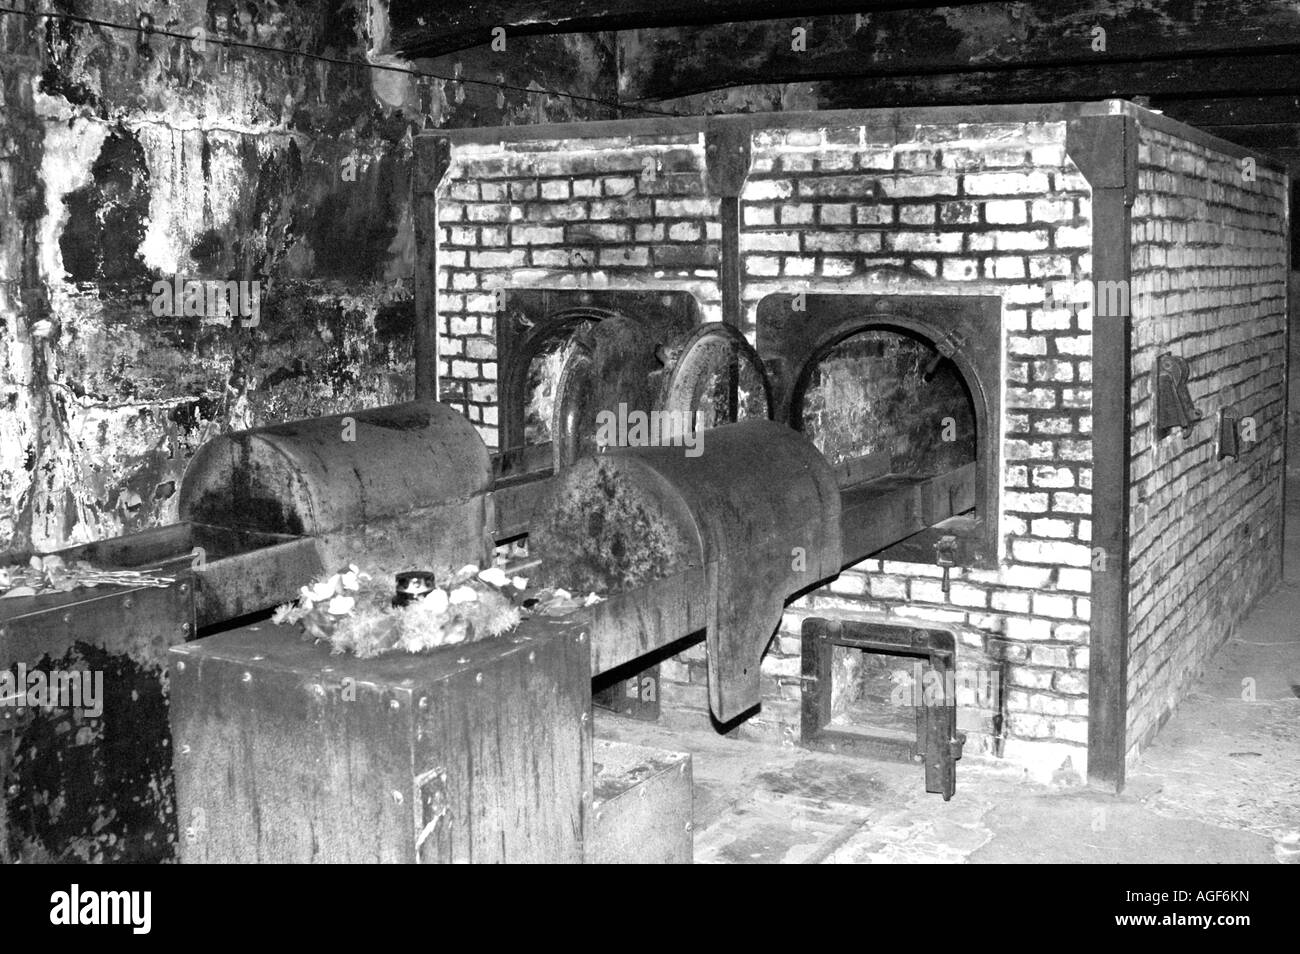 Gas chambers in Nazi Concentration Camp in Auschwitz Birkenau, Oswiecim Poland Stock Photo